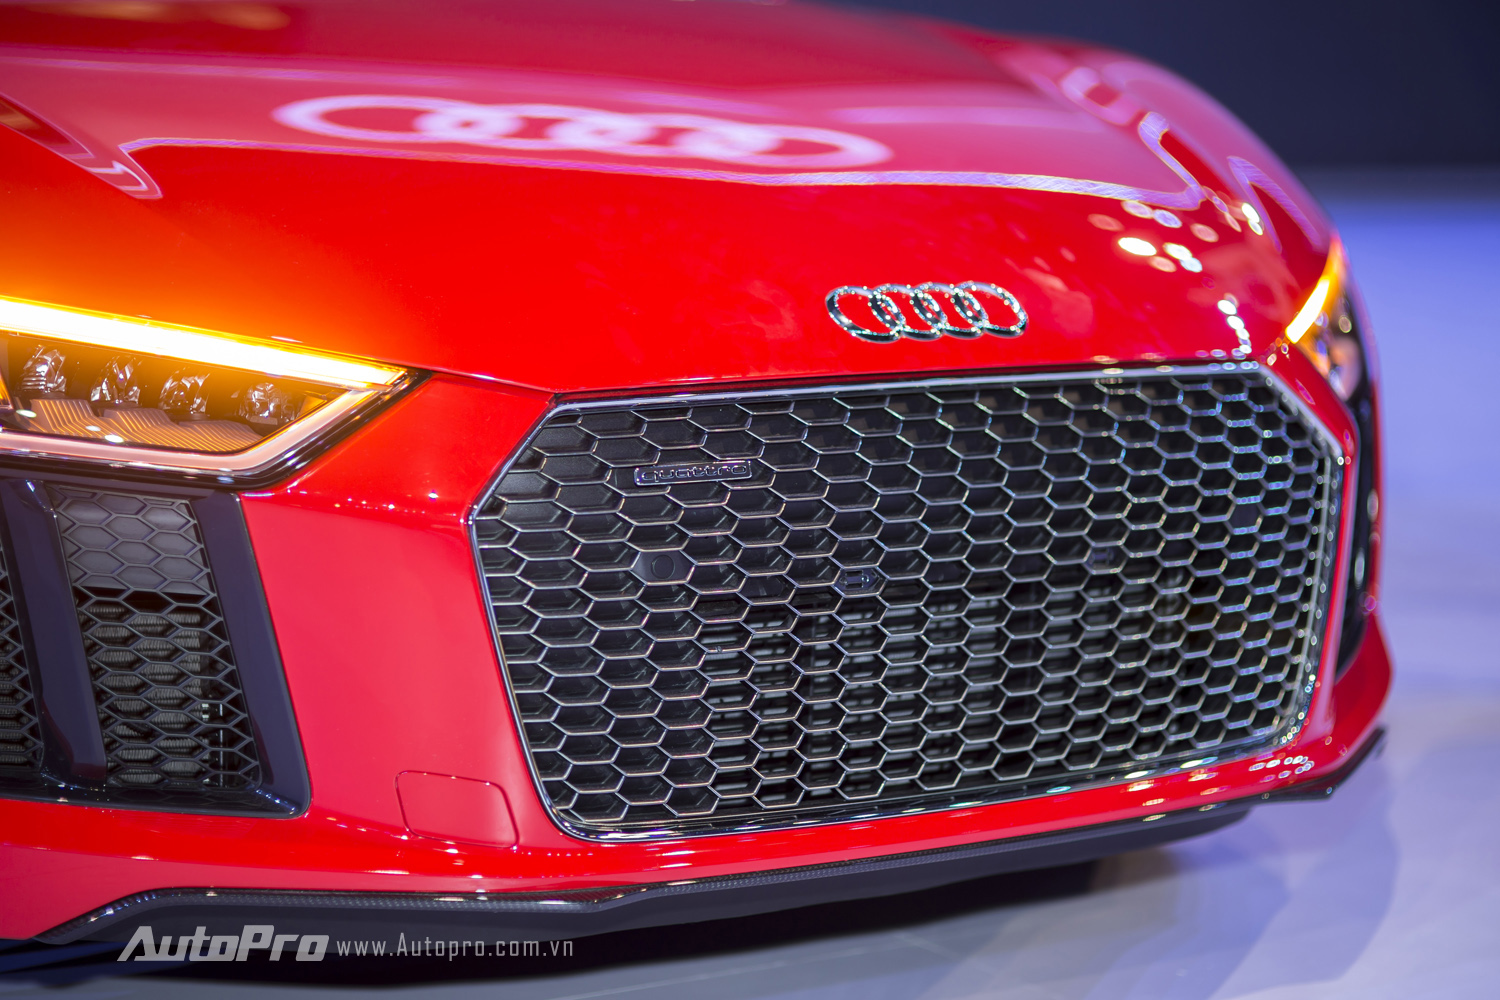 
Lưới tản nhiệt cỡ lớn dạng mắt cáo ngay phía trước đầu xe Audi R8 V10 Plus.
